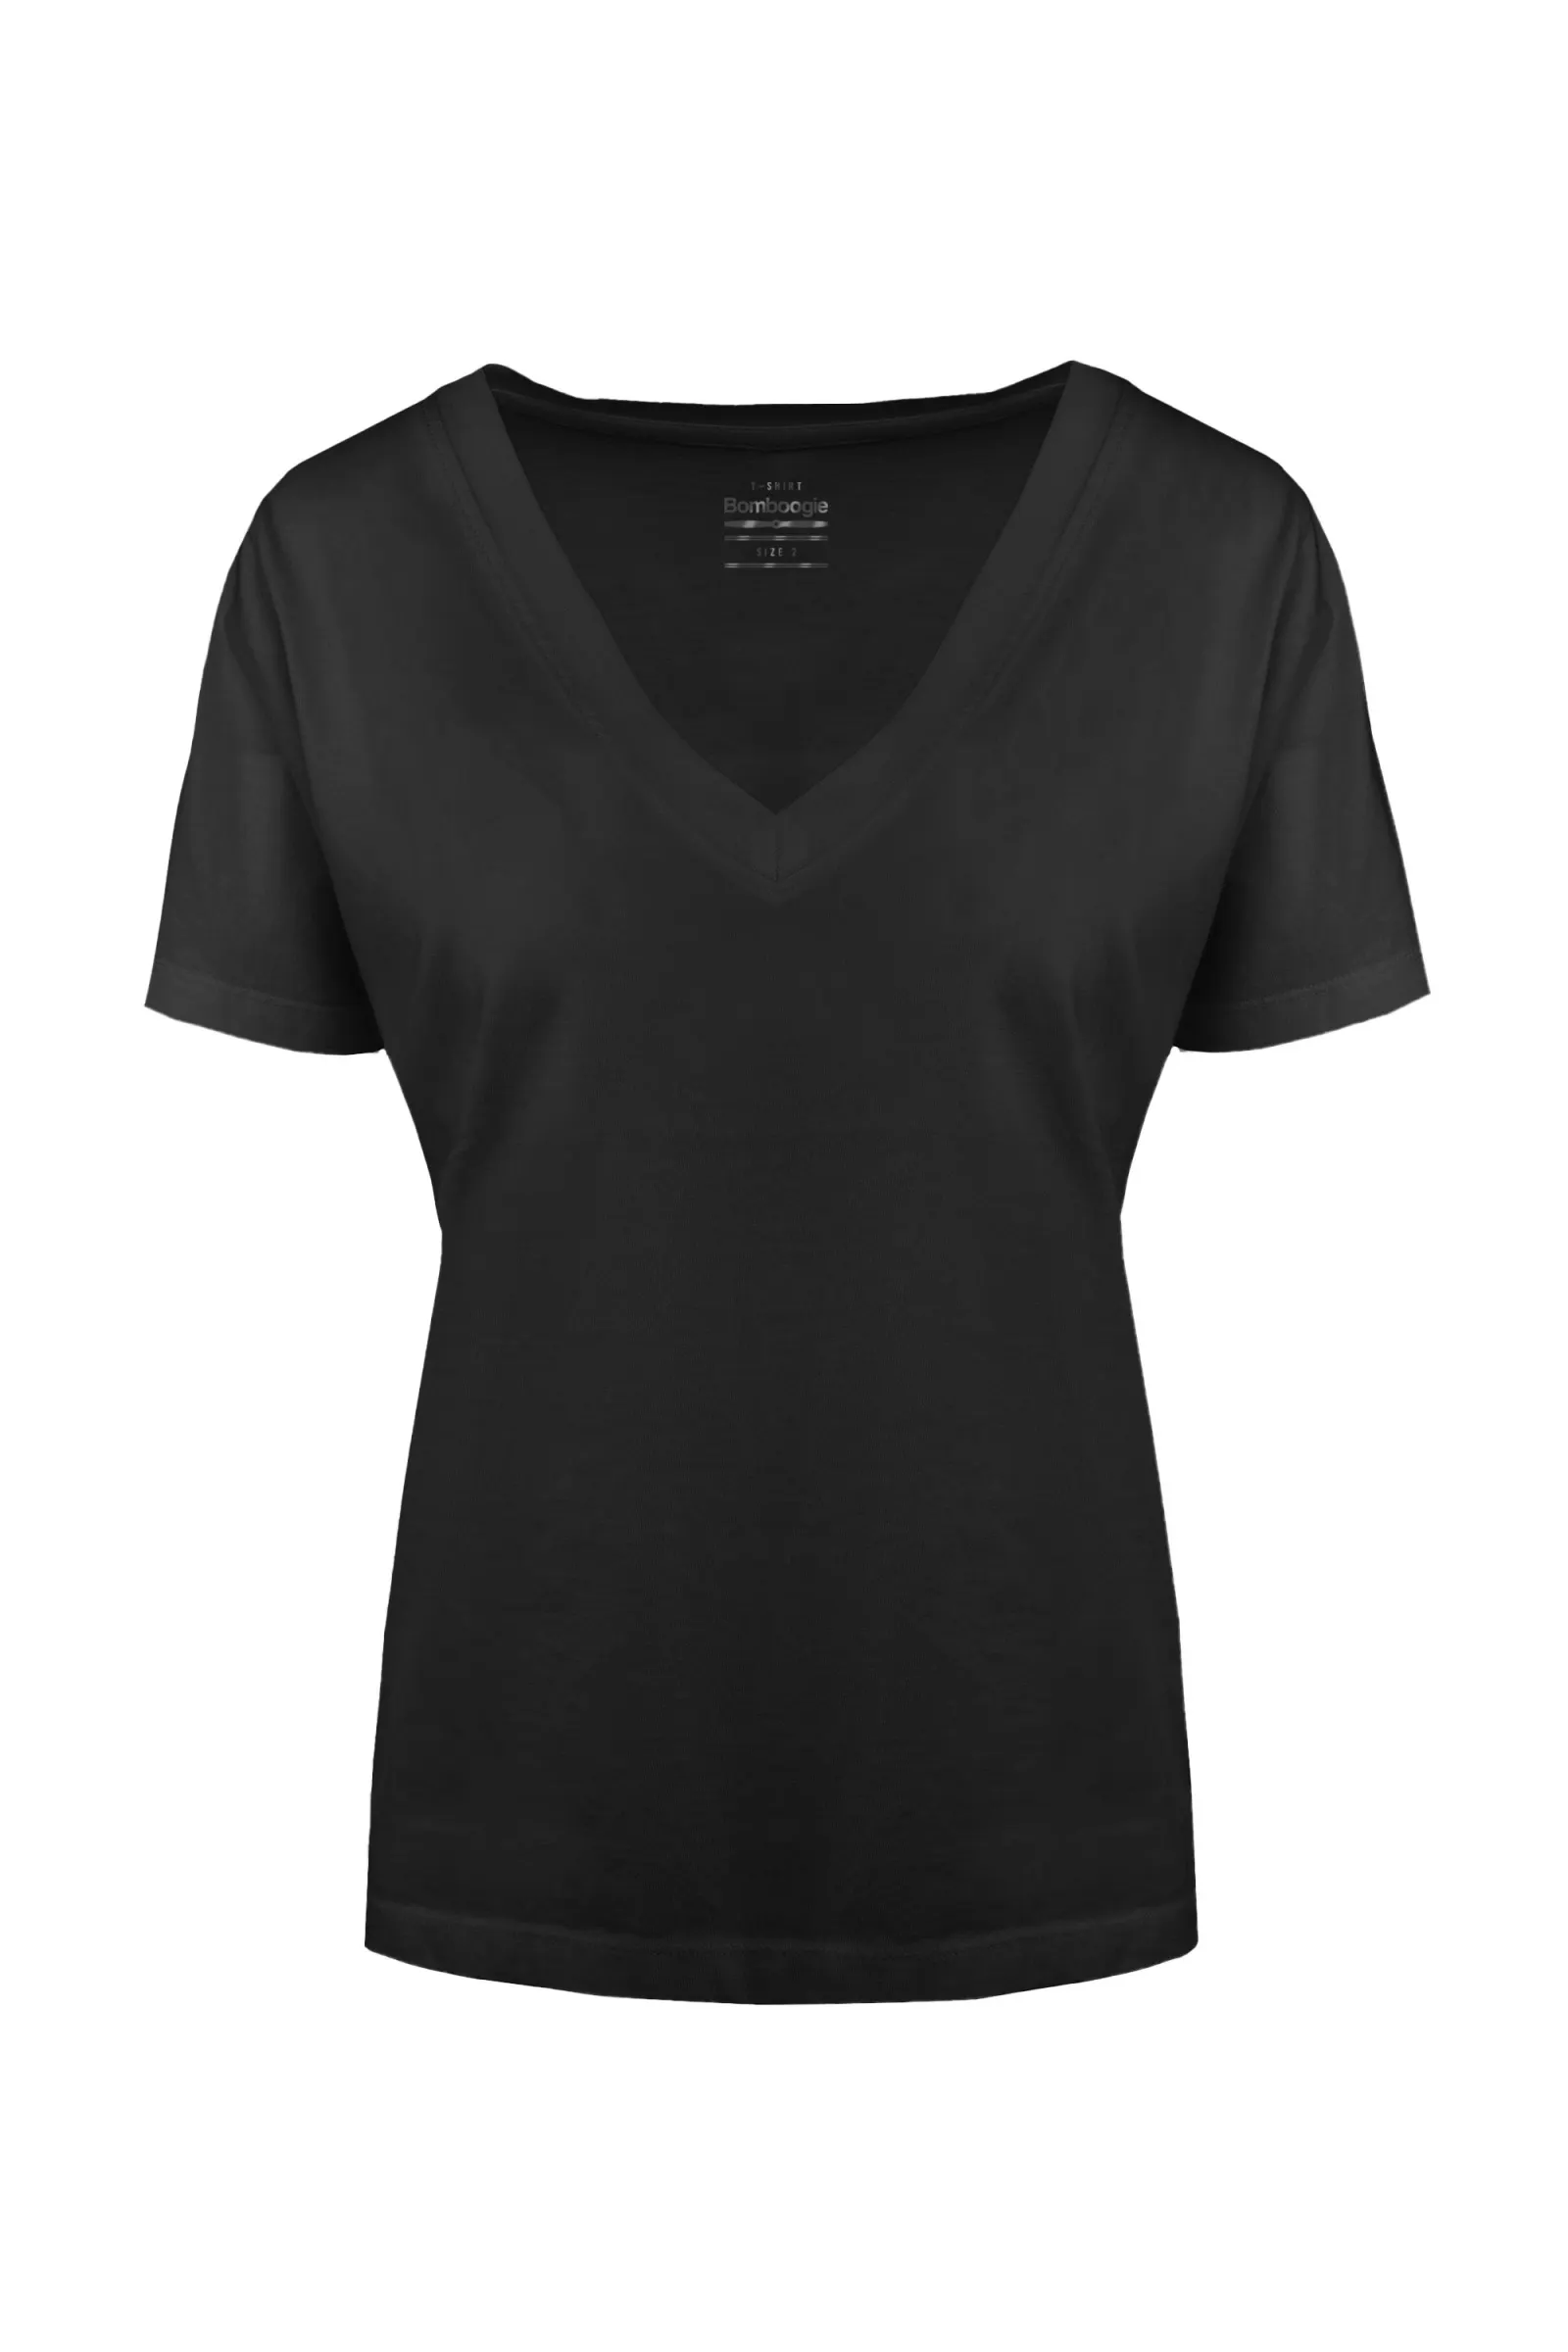 Bomboogie T-shirt da donna con scollo a V in cotone organico TW7359TJORI 90